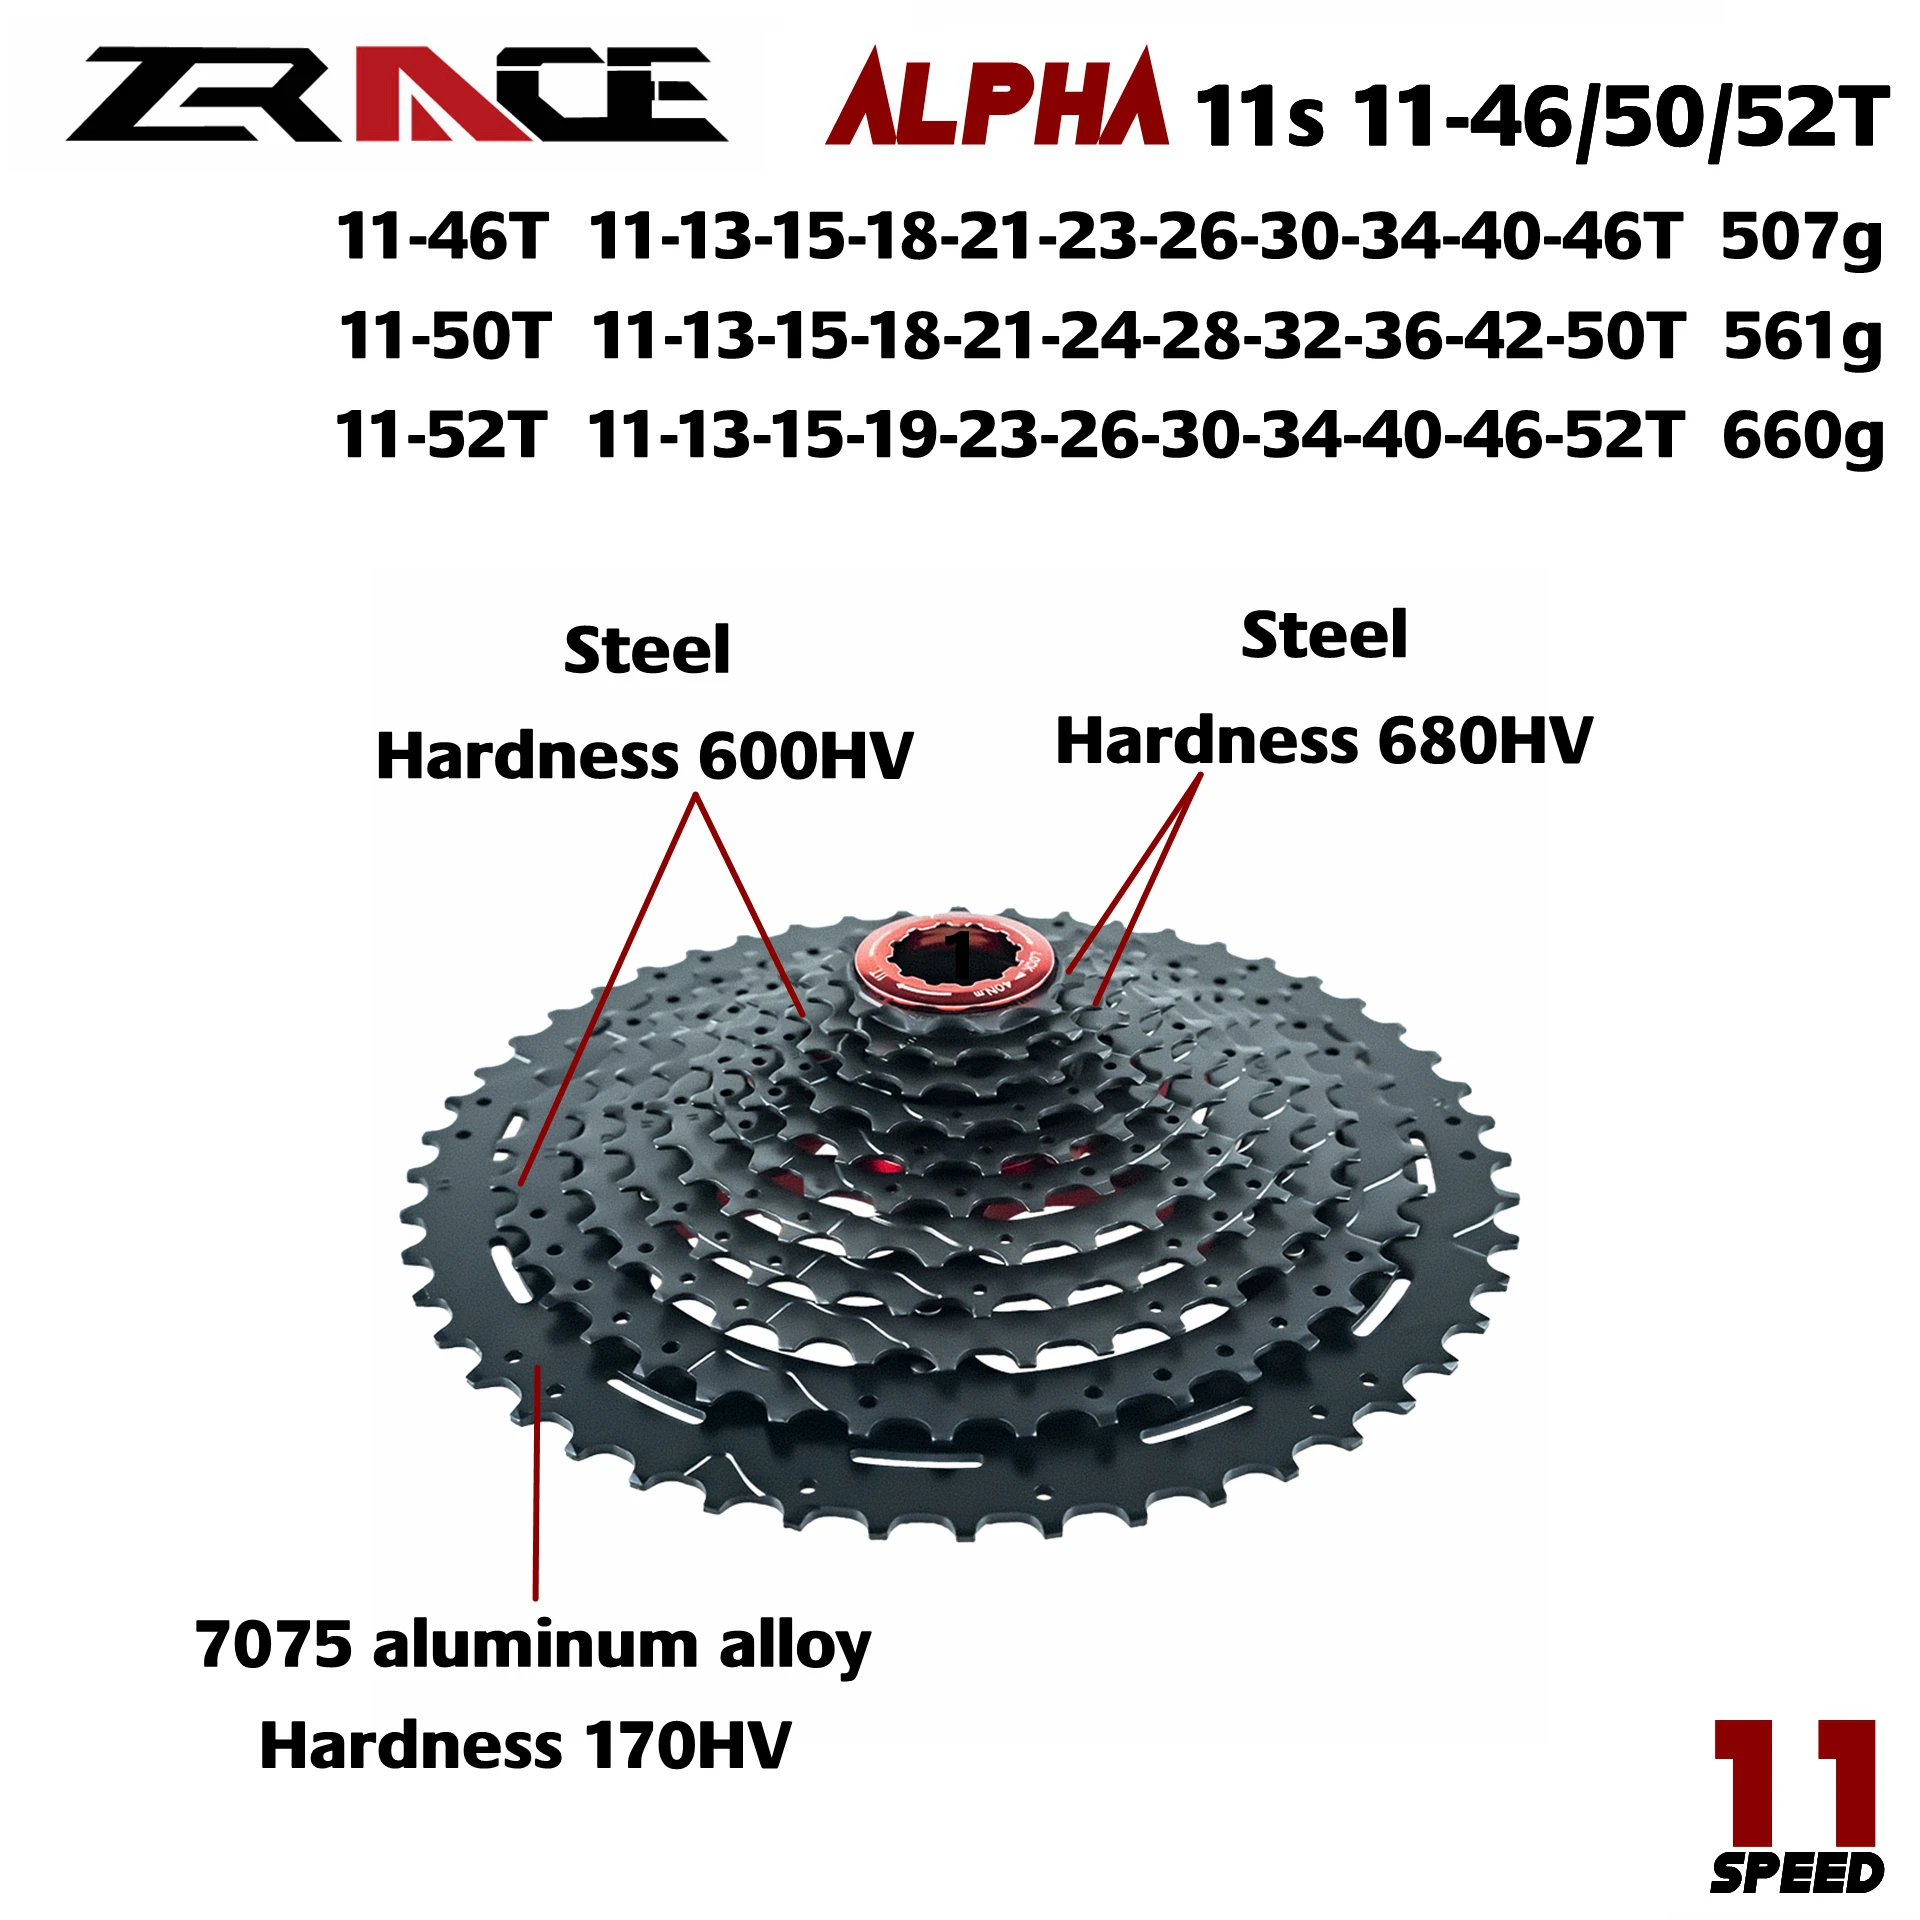 Легкая кассета ZRACE Alpha 11 s, 11 скоростей, для горного велосипеда, 11-46T/50T/52T, черный от AliExpress RU&CIS NEW